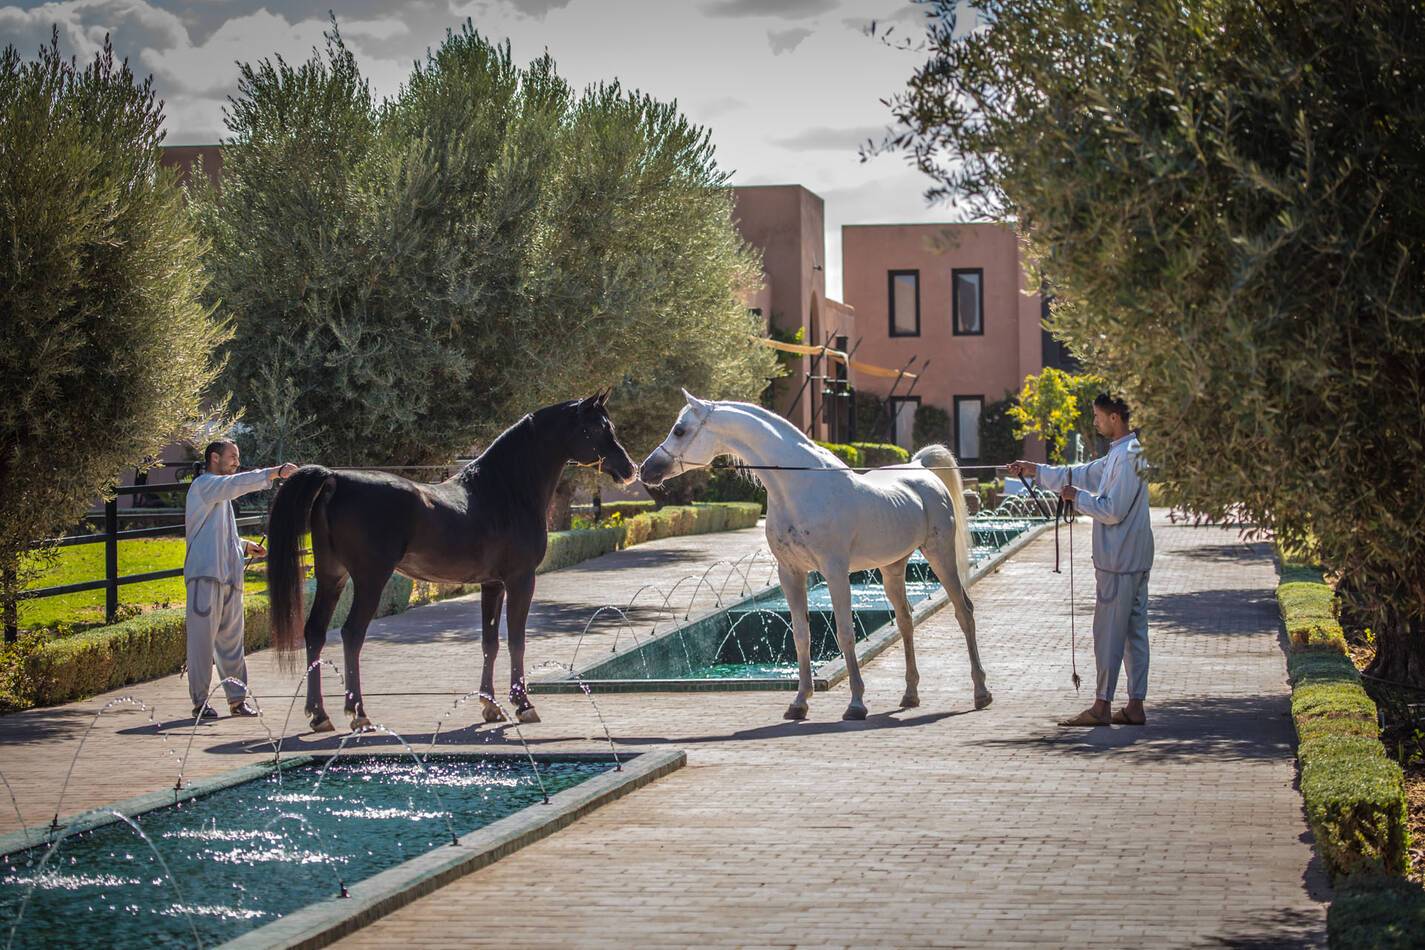 Selman Hotel Marrakech Horses